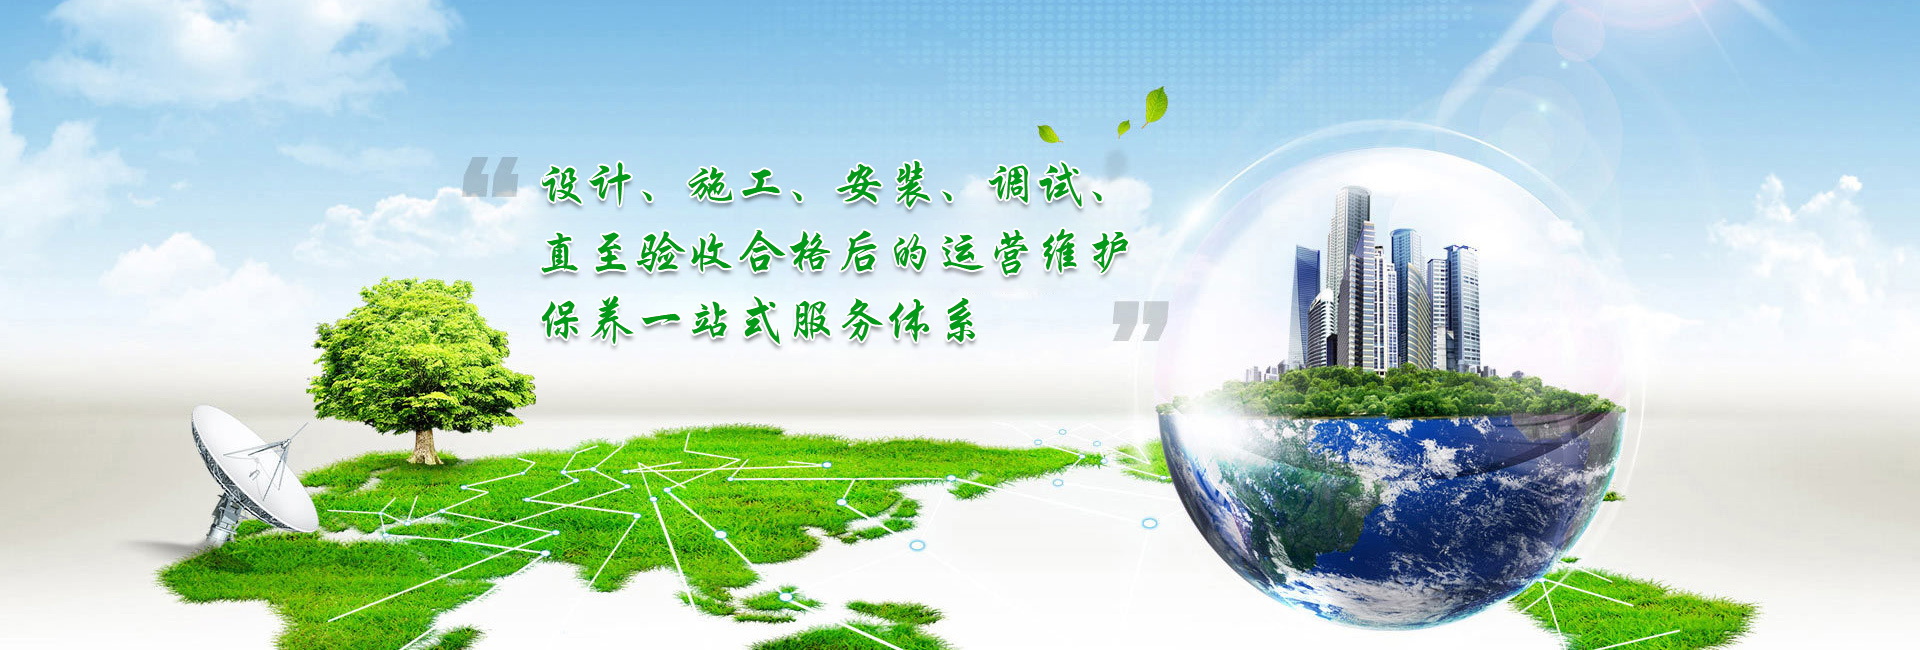 bwin·必赢(中国)唯一官方网站_image1437